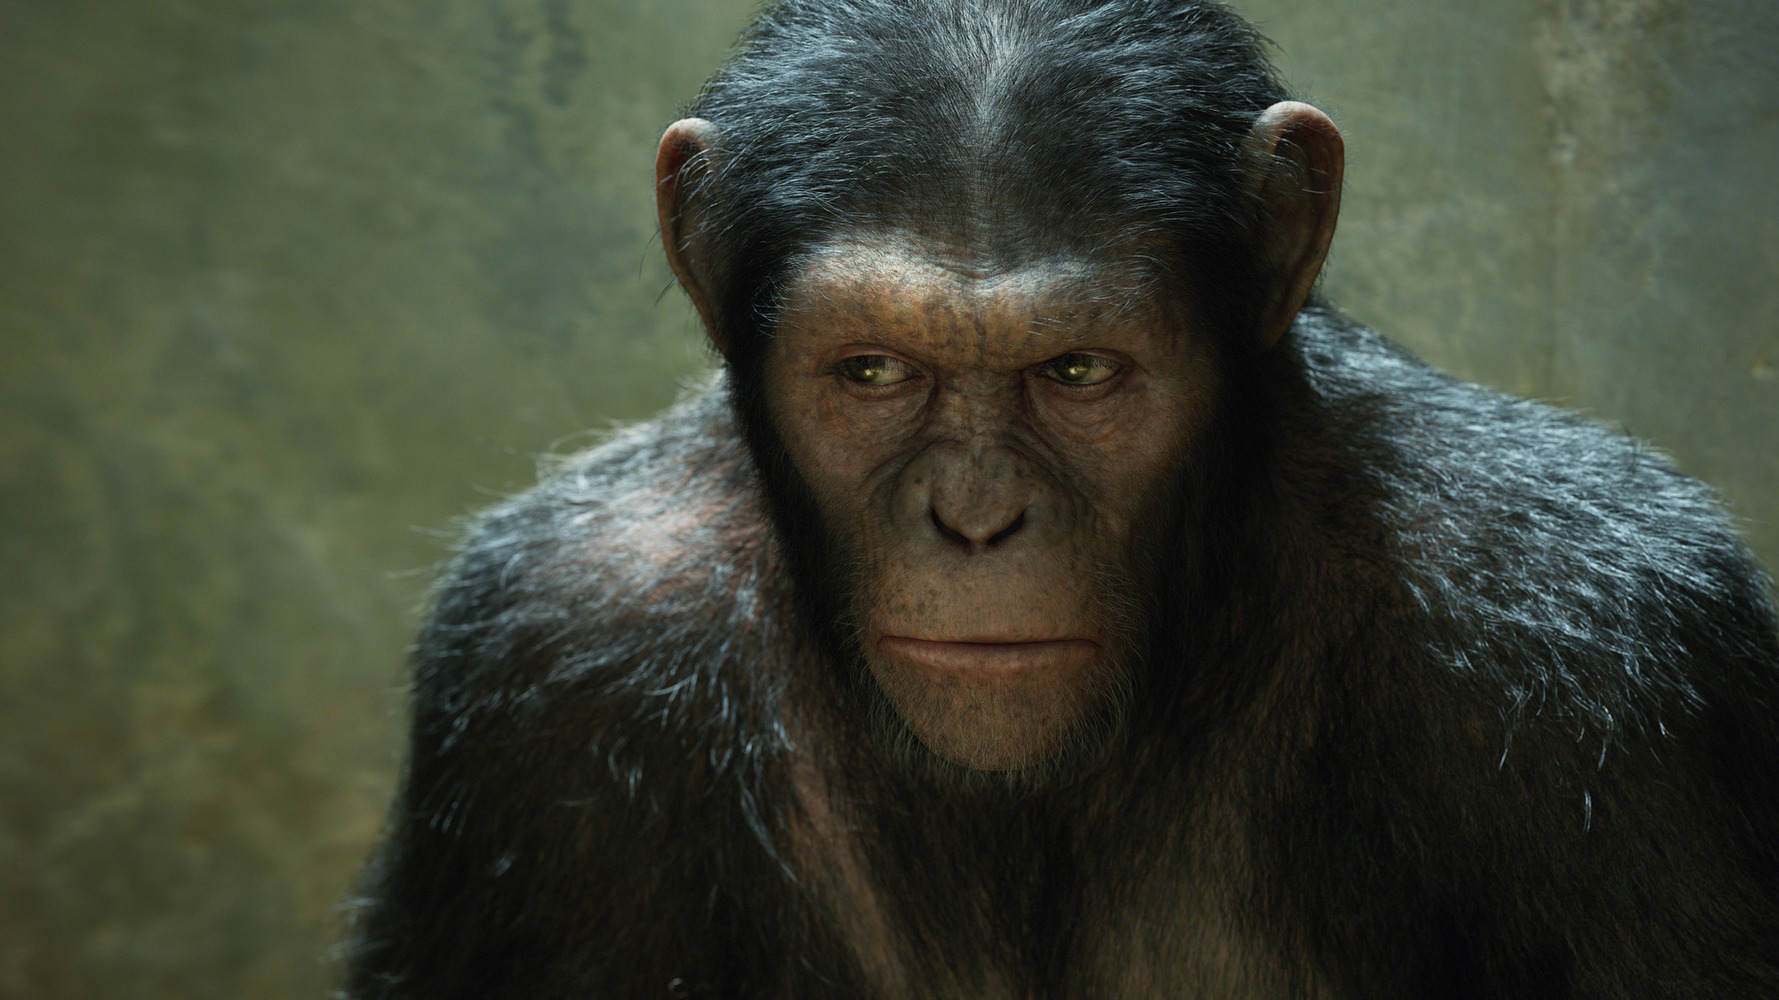 Des singes regardent en direct la première de "La planète des singes 2"